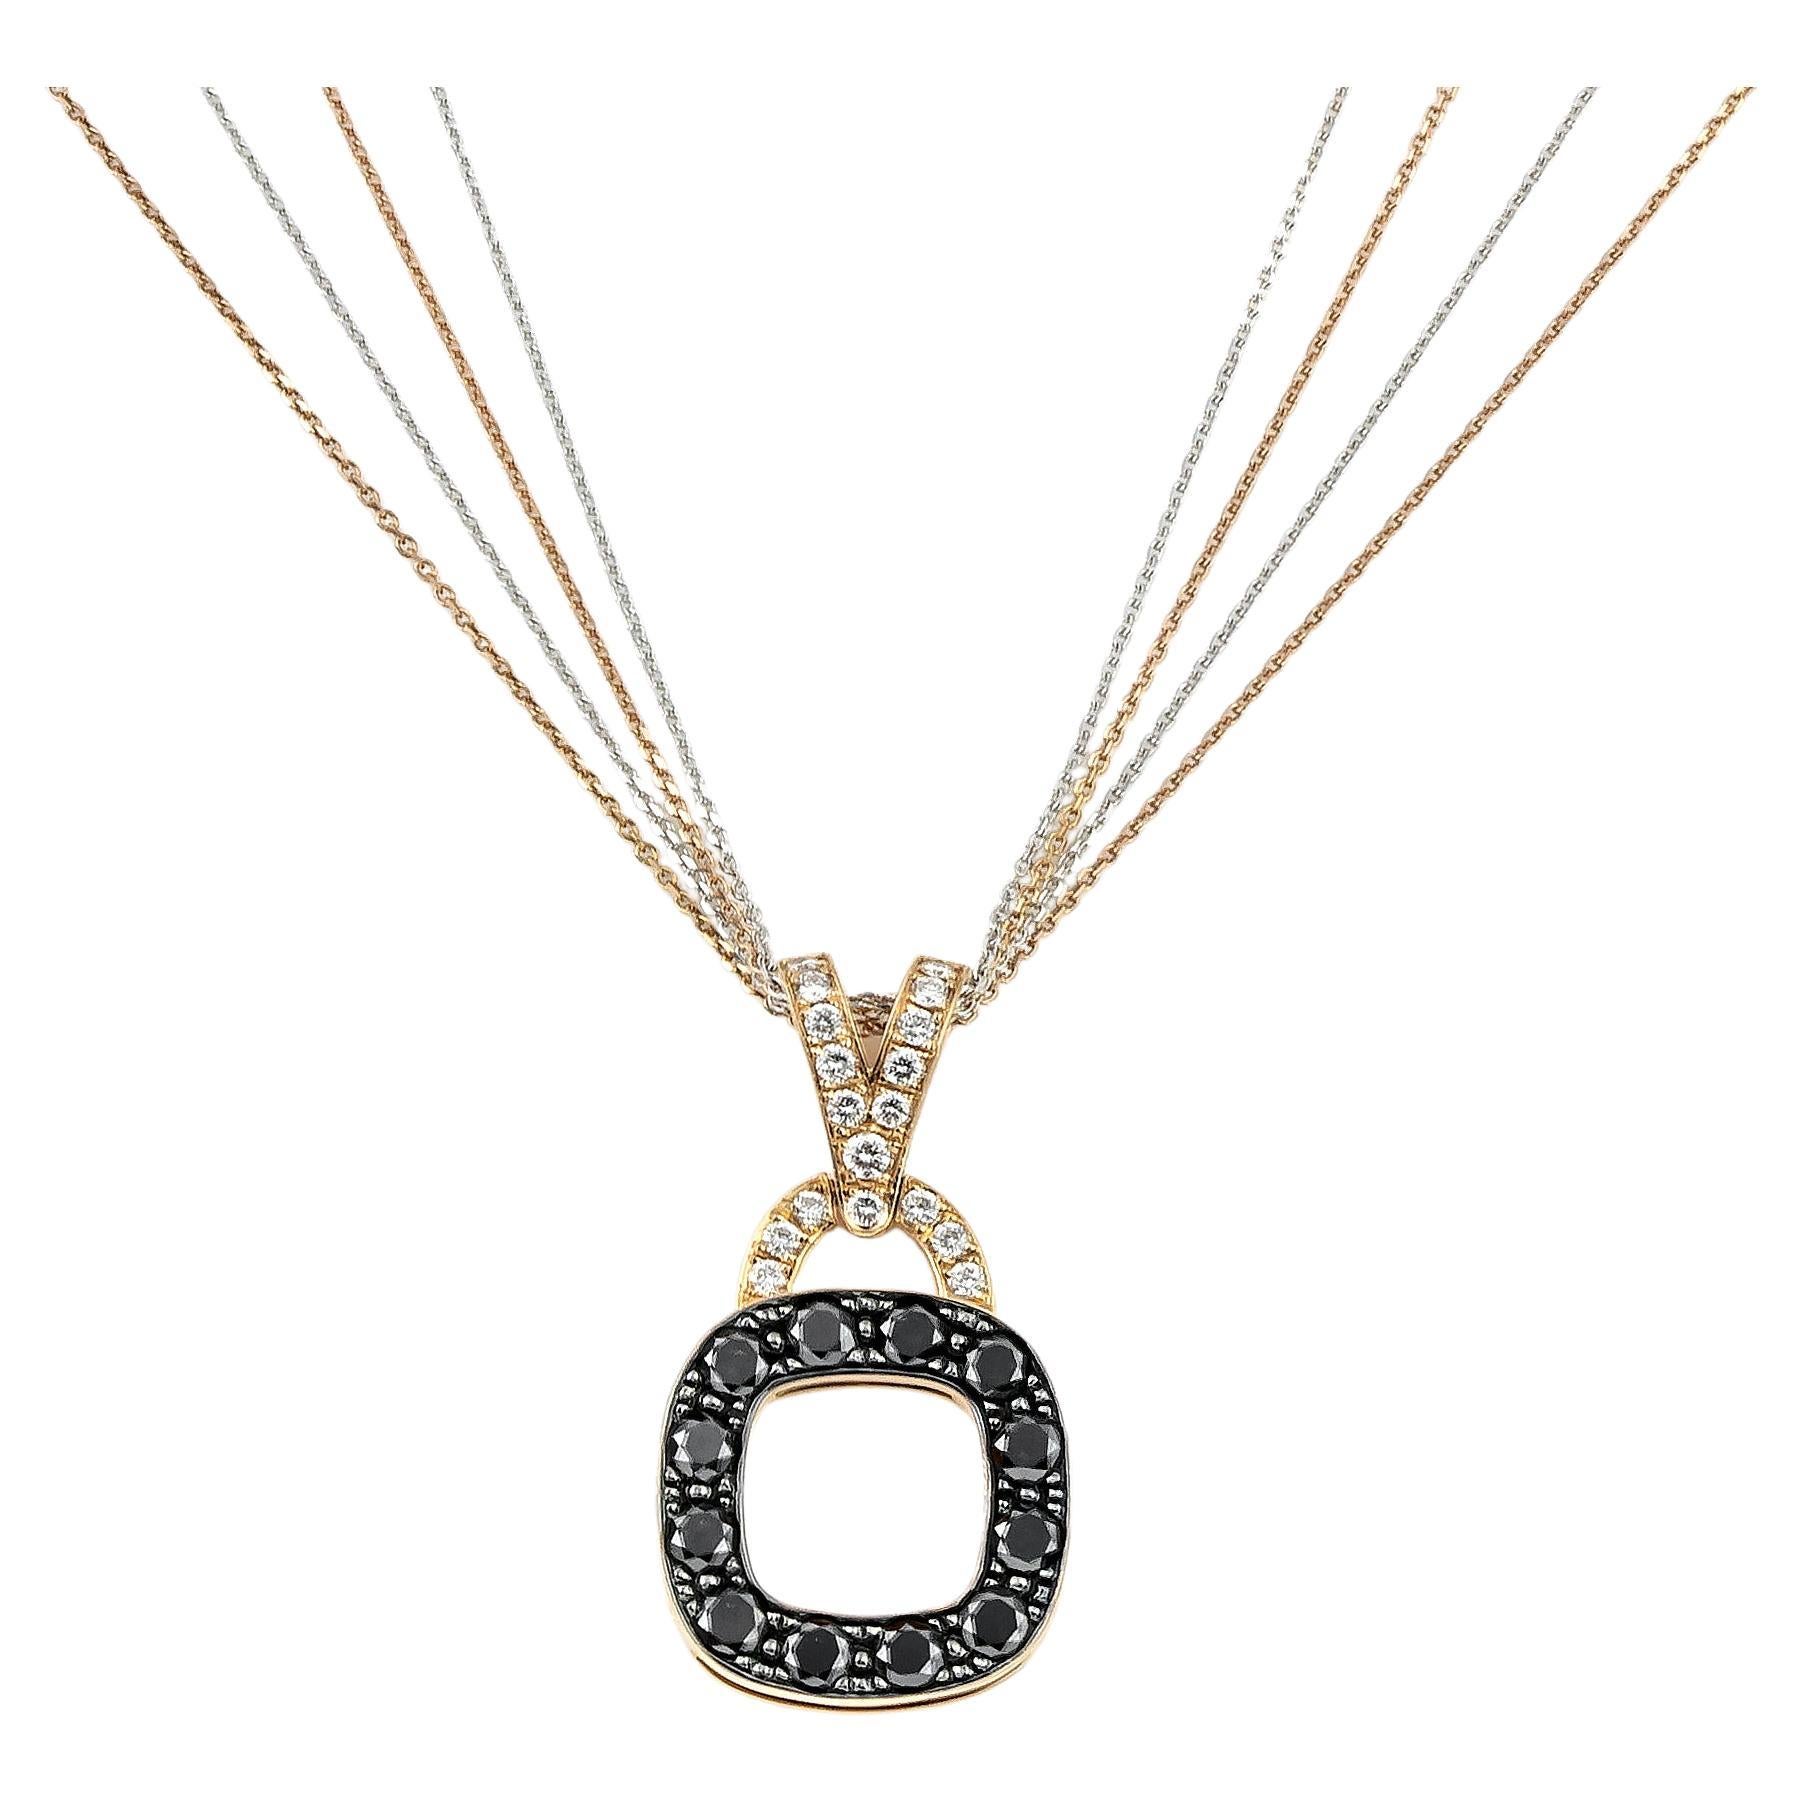 Abgerundete quadratische schwarz-weiße Pave-Diamanten-Anhänger-Halskette aus 18kt Roségold